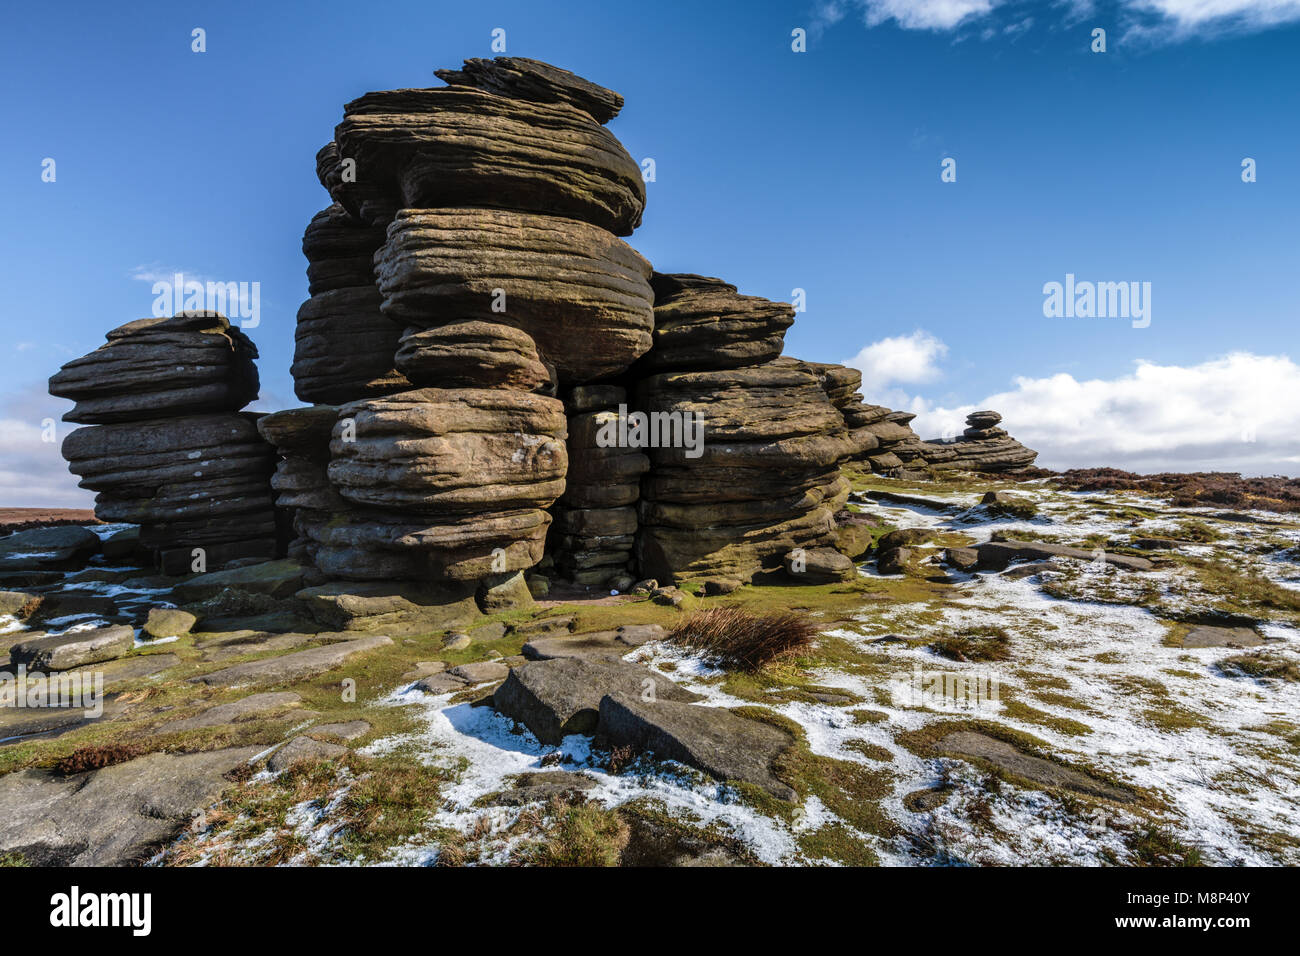 La formation de pierres de roue sur le bord de la Derwent Parc national de Peak District Derbyshire, Angleterre, Royaume-Uni Banque D'Images